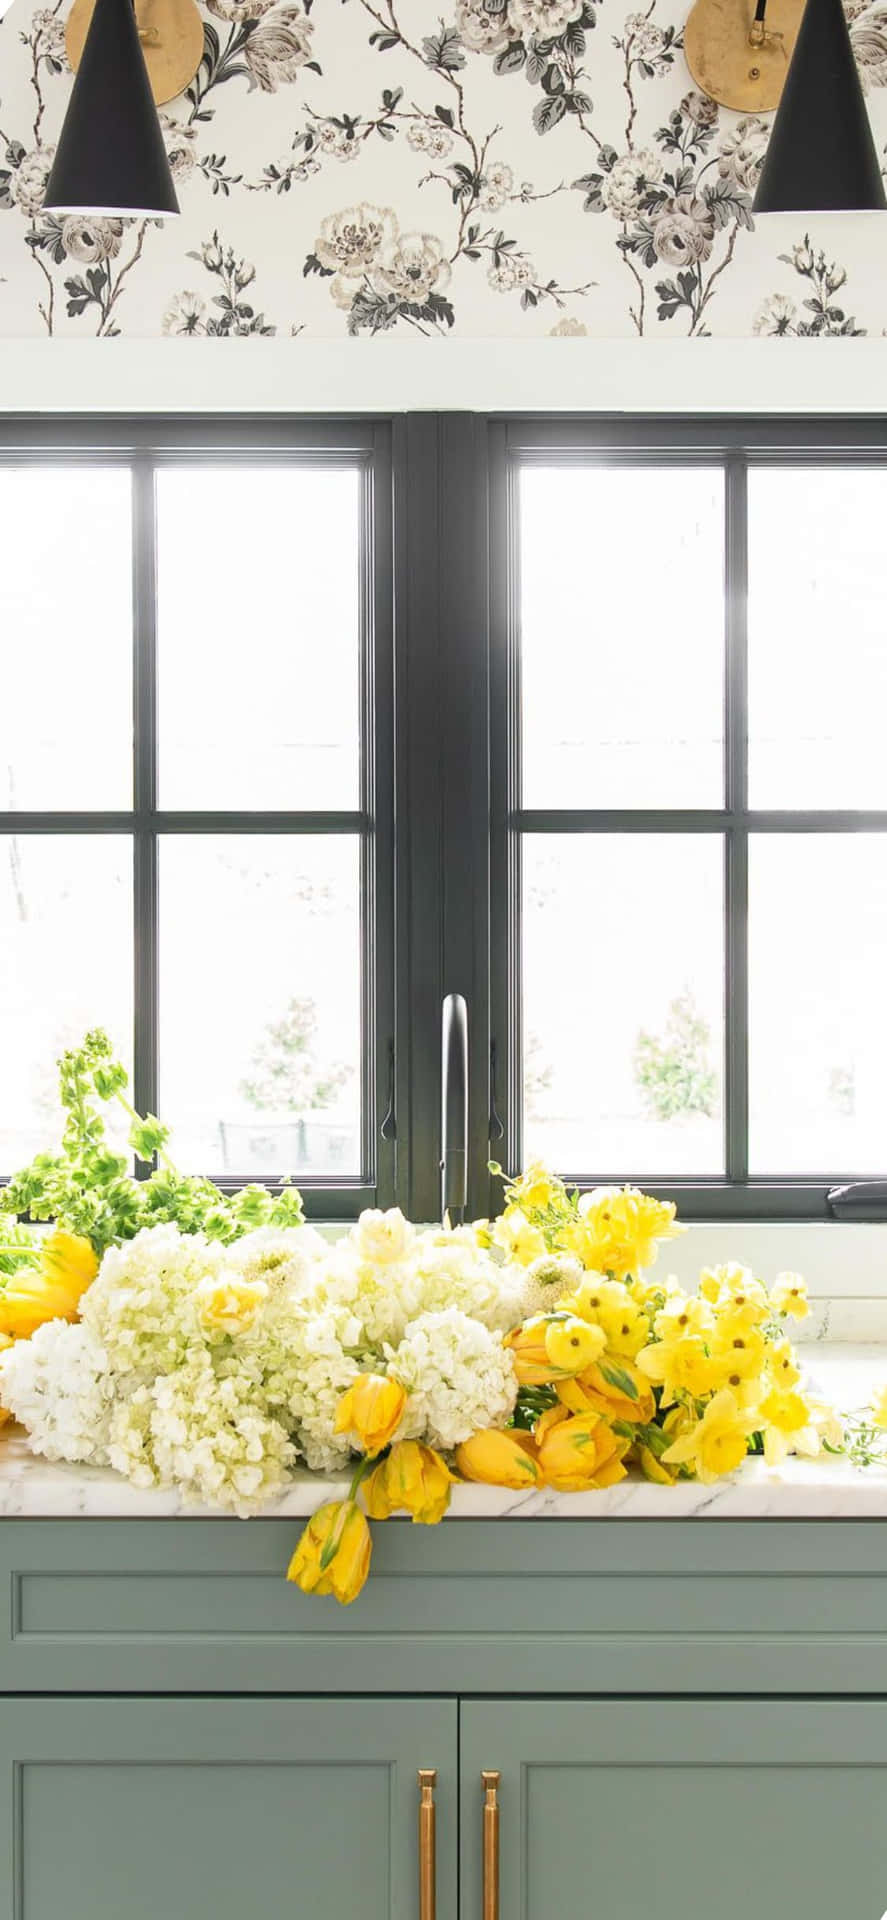 Blomme i tæller Iphone X køkkengrund